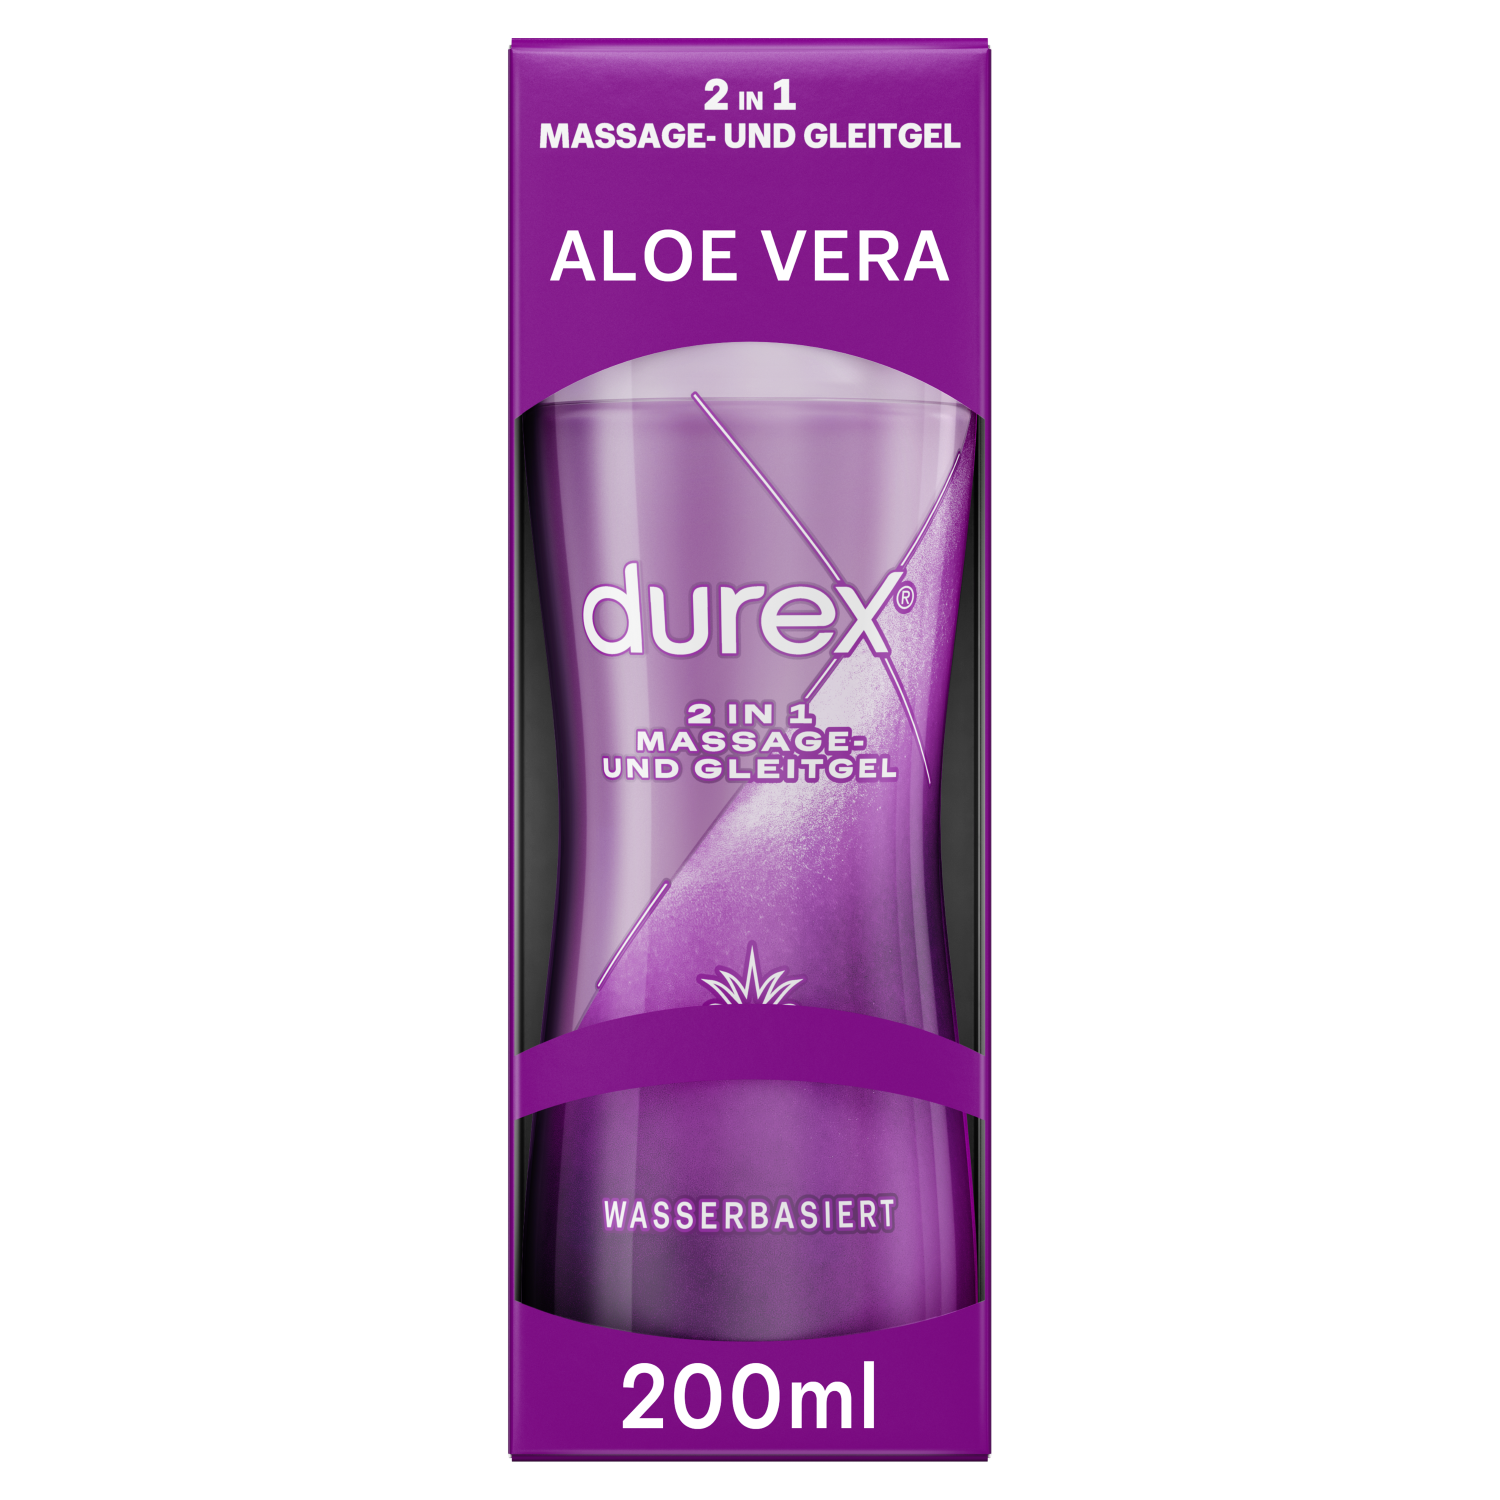 Durex 2in1 Massage und Gleitgel Aloe Vera, 200ml